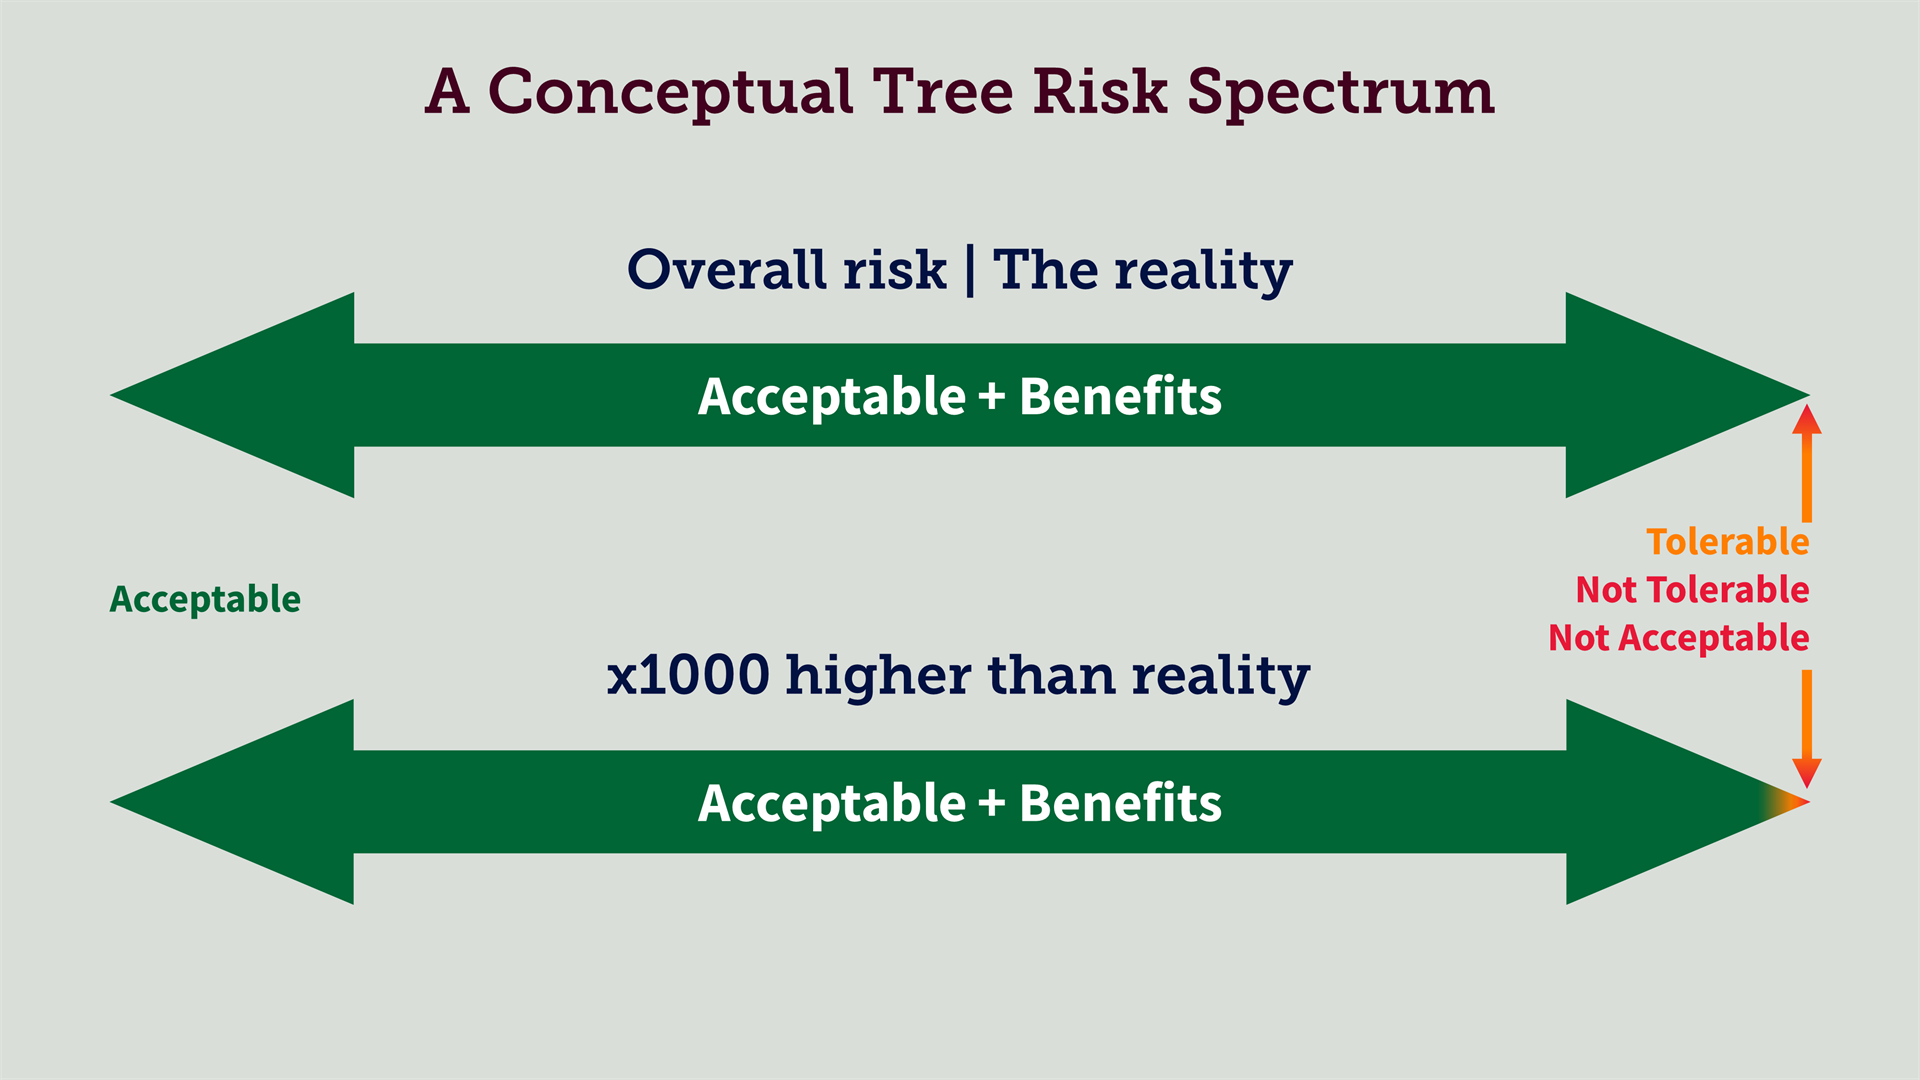 Tree risk spectruem